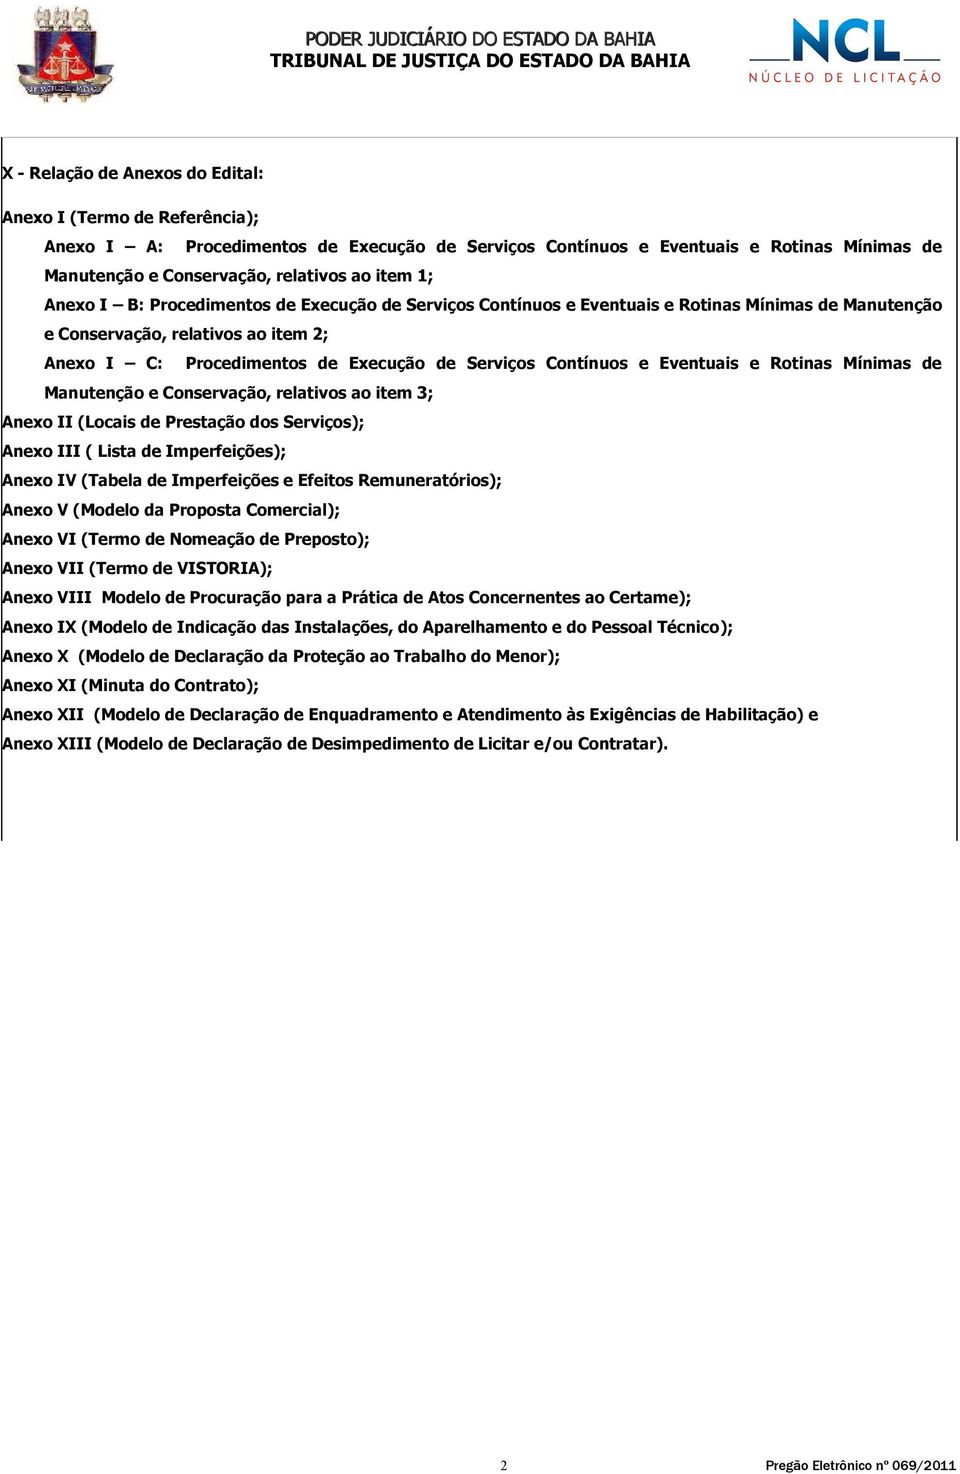 Contínuos e Eventuais e Rotinas Mínimas de Manutenção e Conservação, relativos ao item 3; Anexo II (Locais de Prestação dos Serviços); Anexo III ( Lista de Imperfeições); Anexo IV (Tabela de